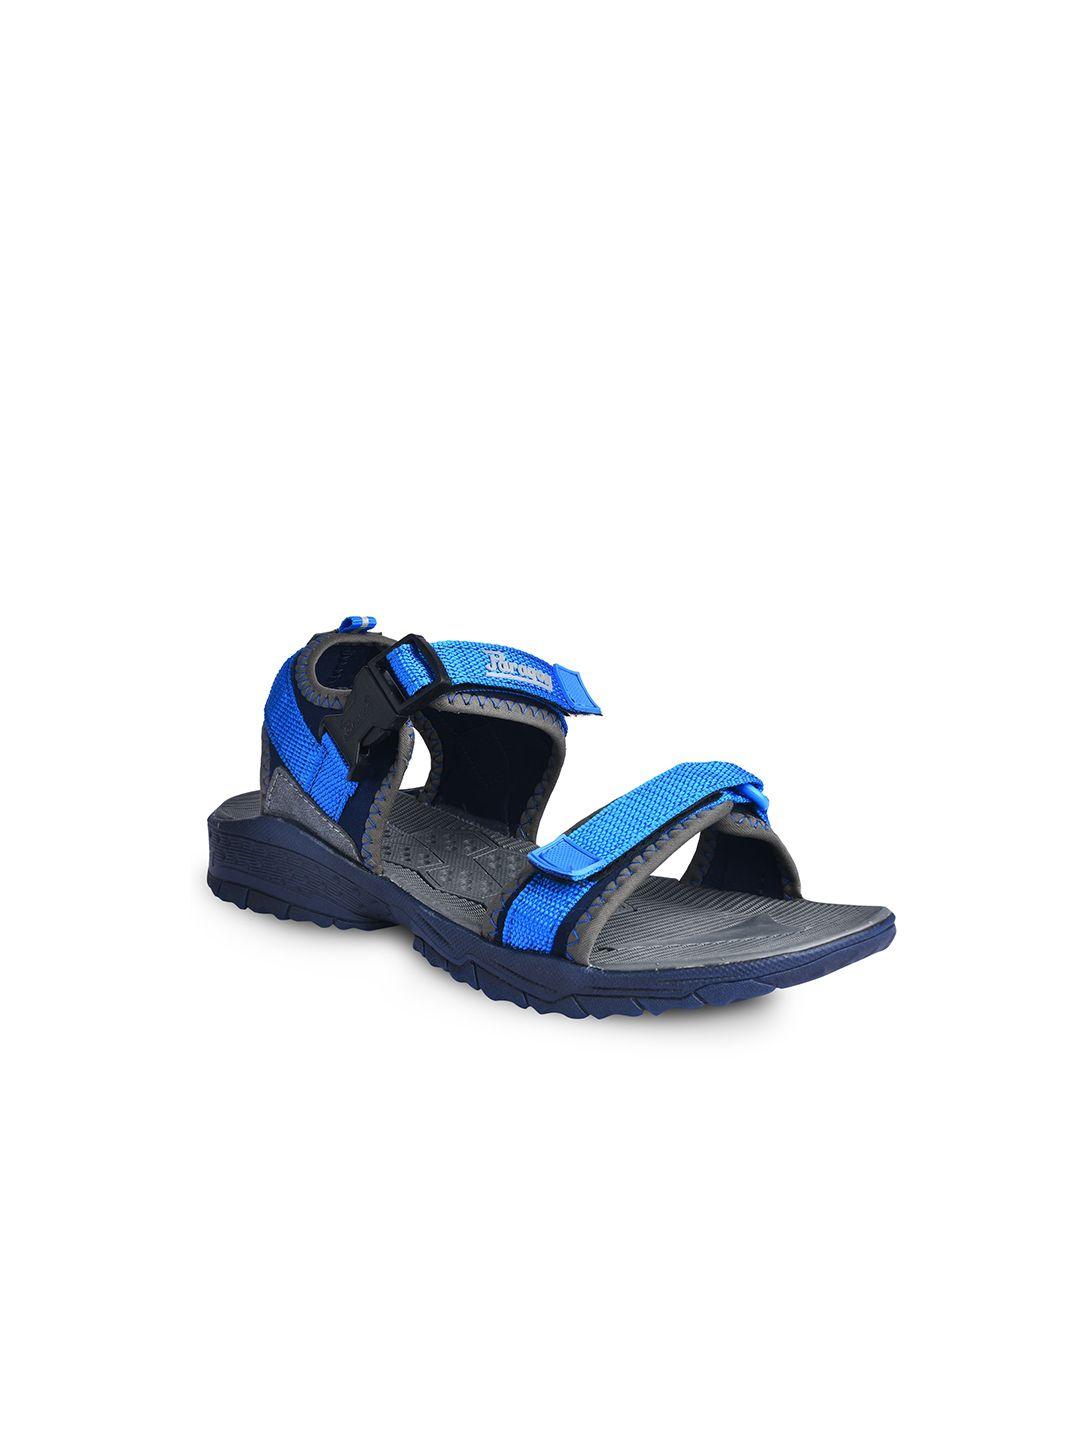 paragon-men-blue-&-black-sports-sandals